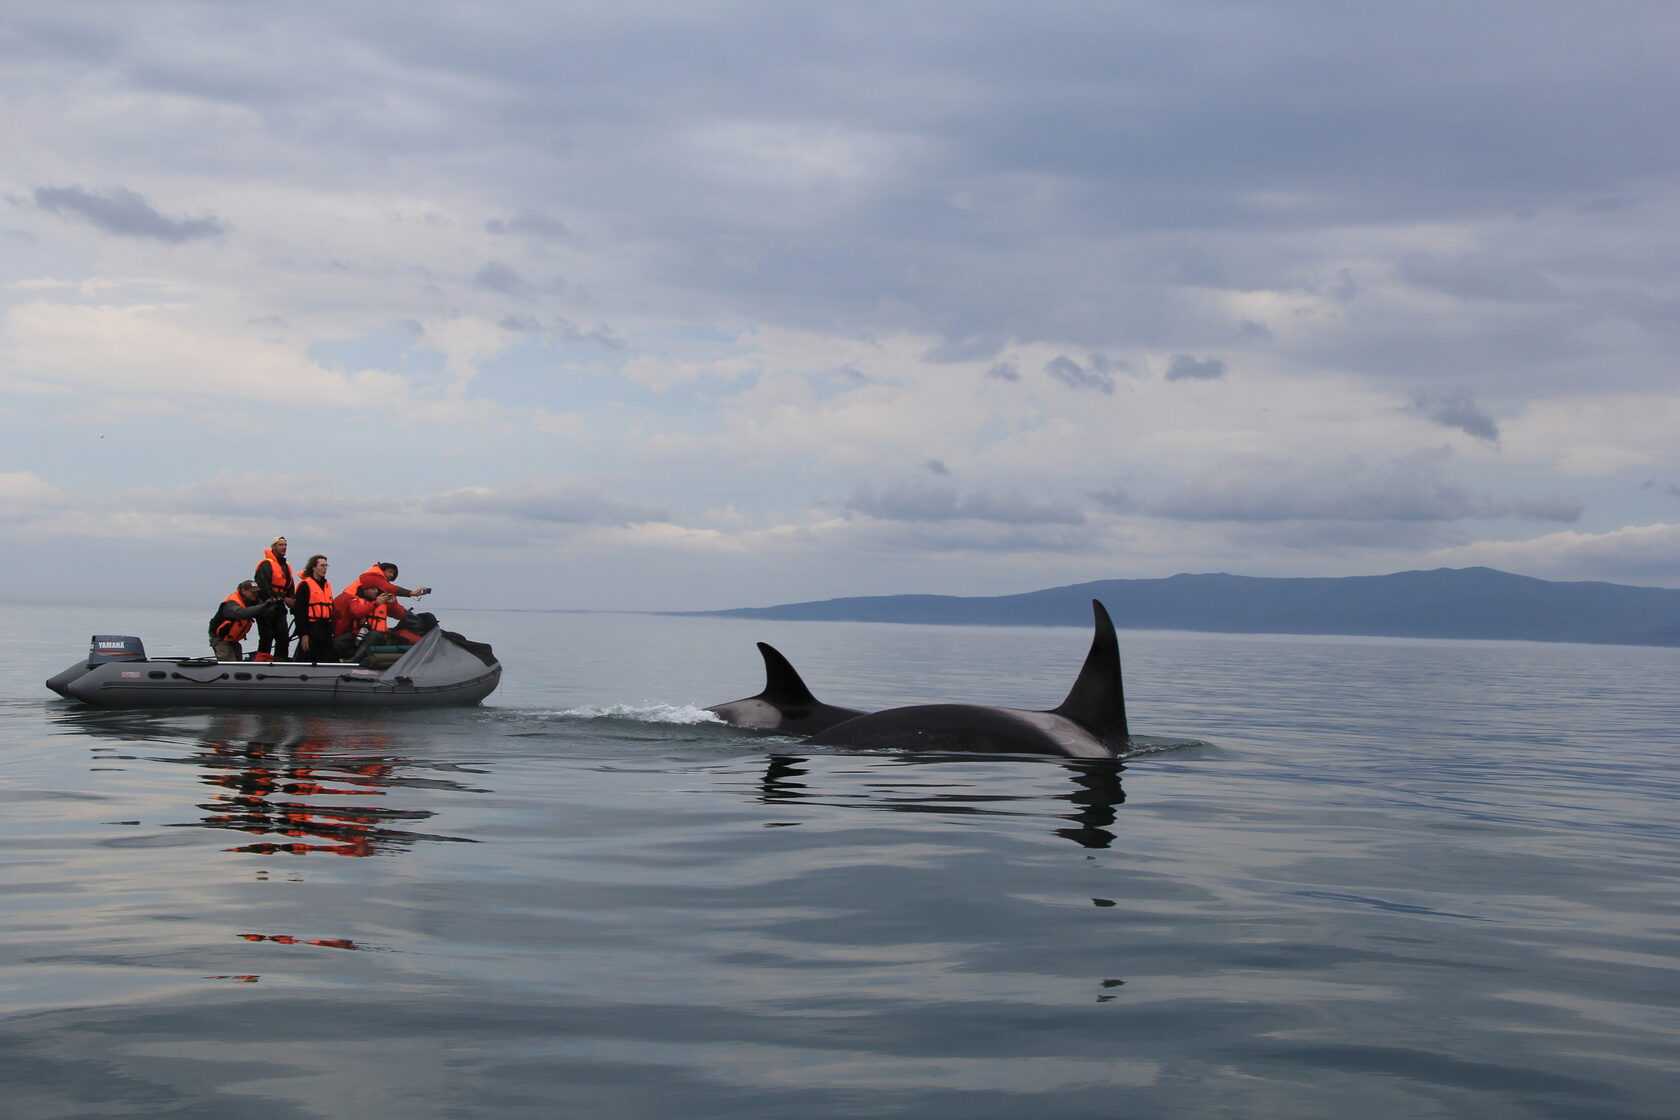 Шантарские острова фото с китами